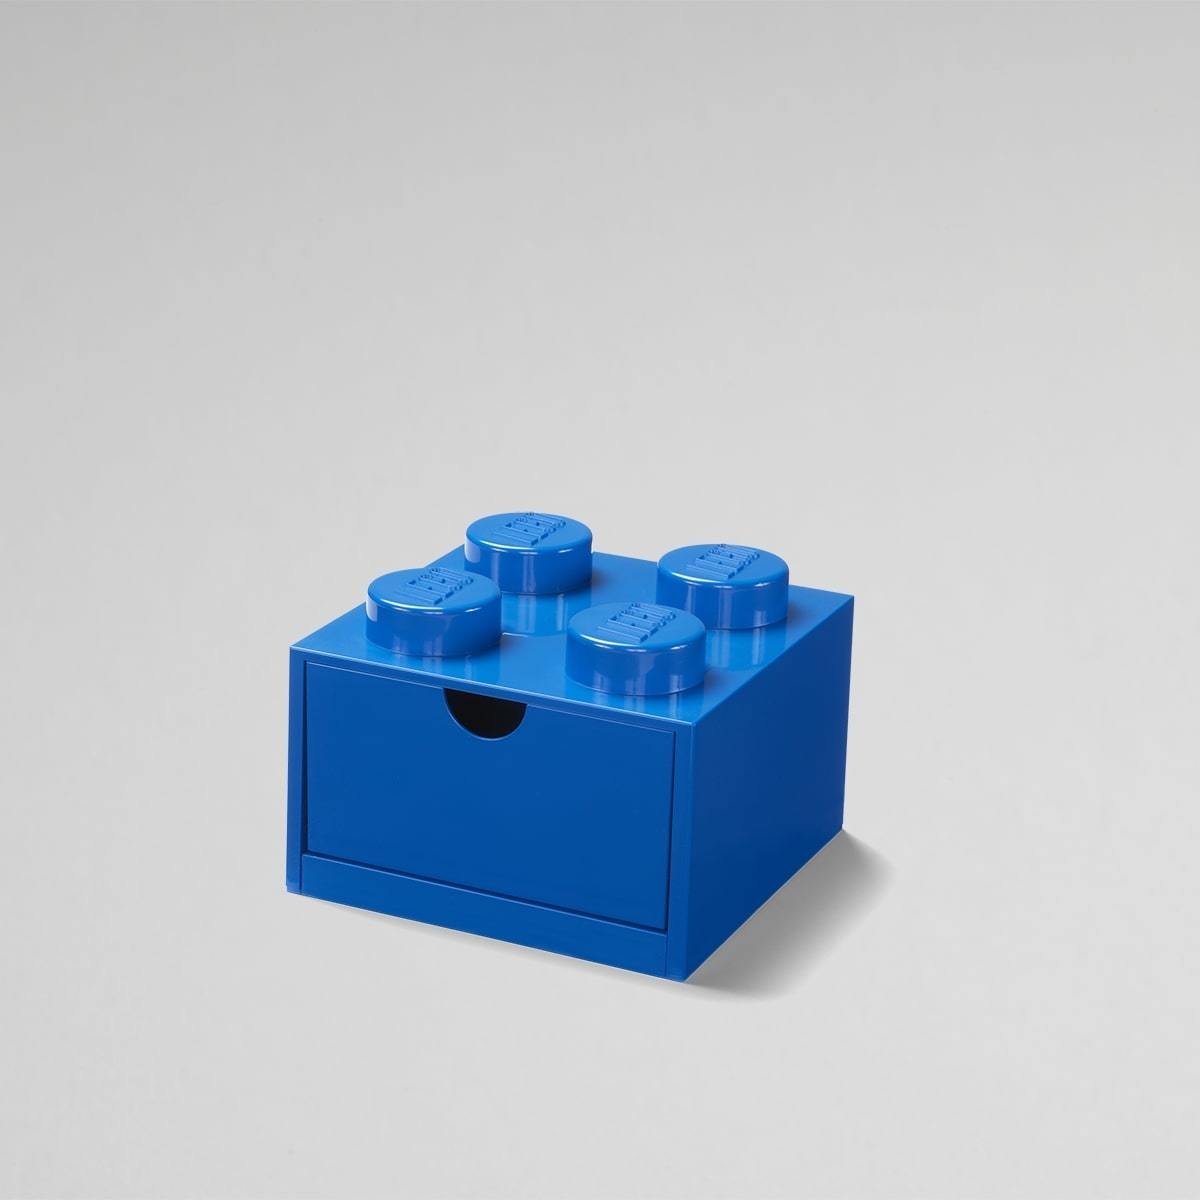 Daiktadėžė LEGO DESK, mėlynos sp., 15,8 x 15,8 x 11,3 cm, 290 ml - 1